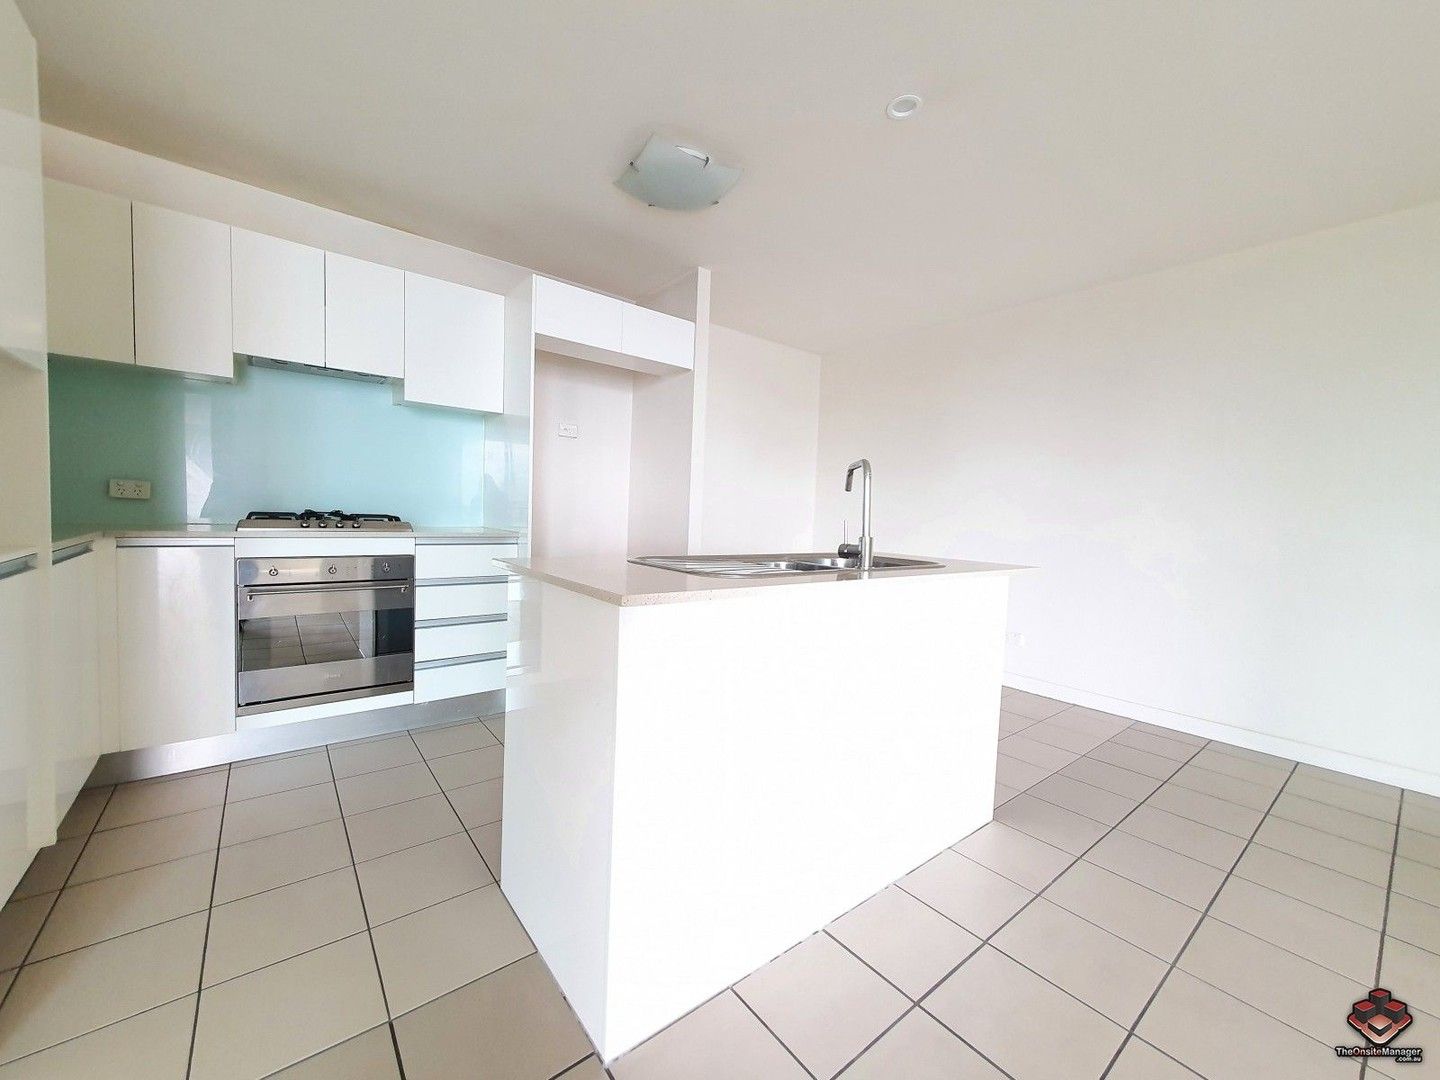 2 bedrooms Apartment / Unit / Flat in VUE04/92-100 Quay Street BRISBANE CITY QLD, 4000